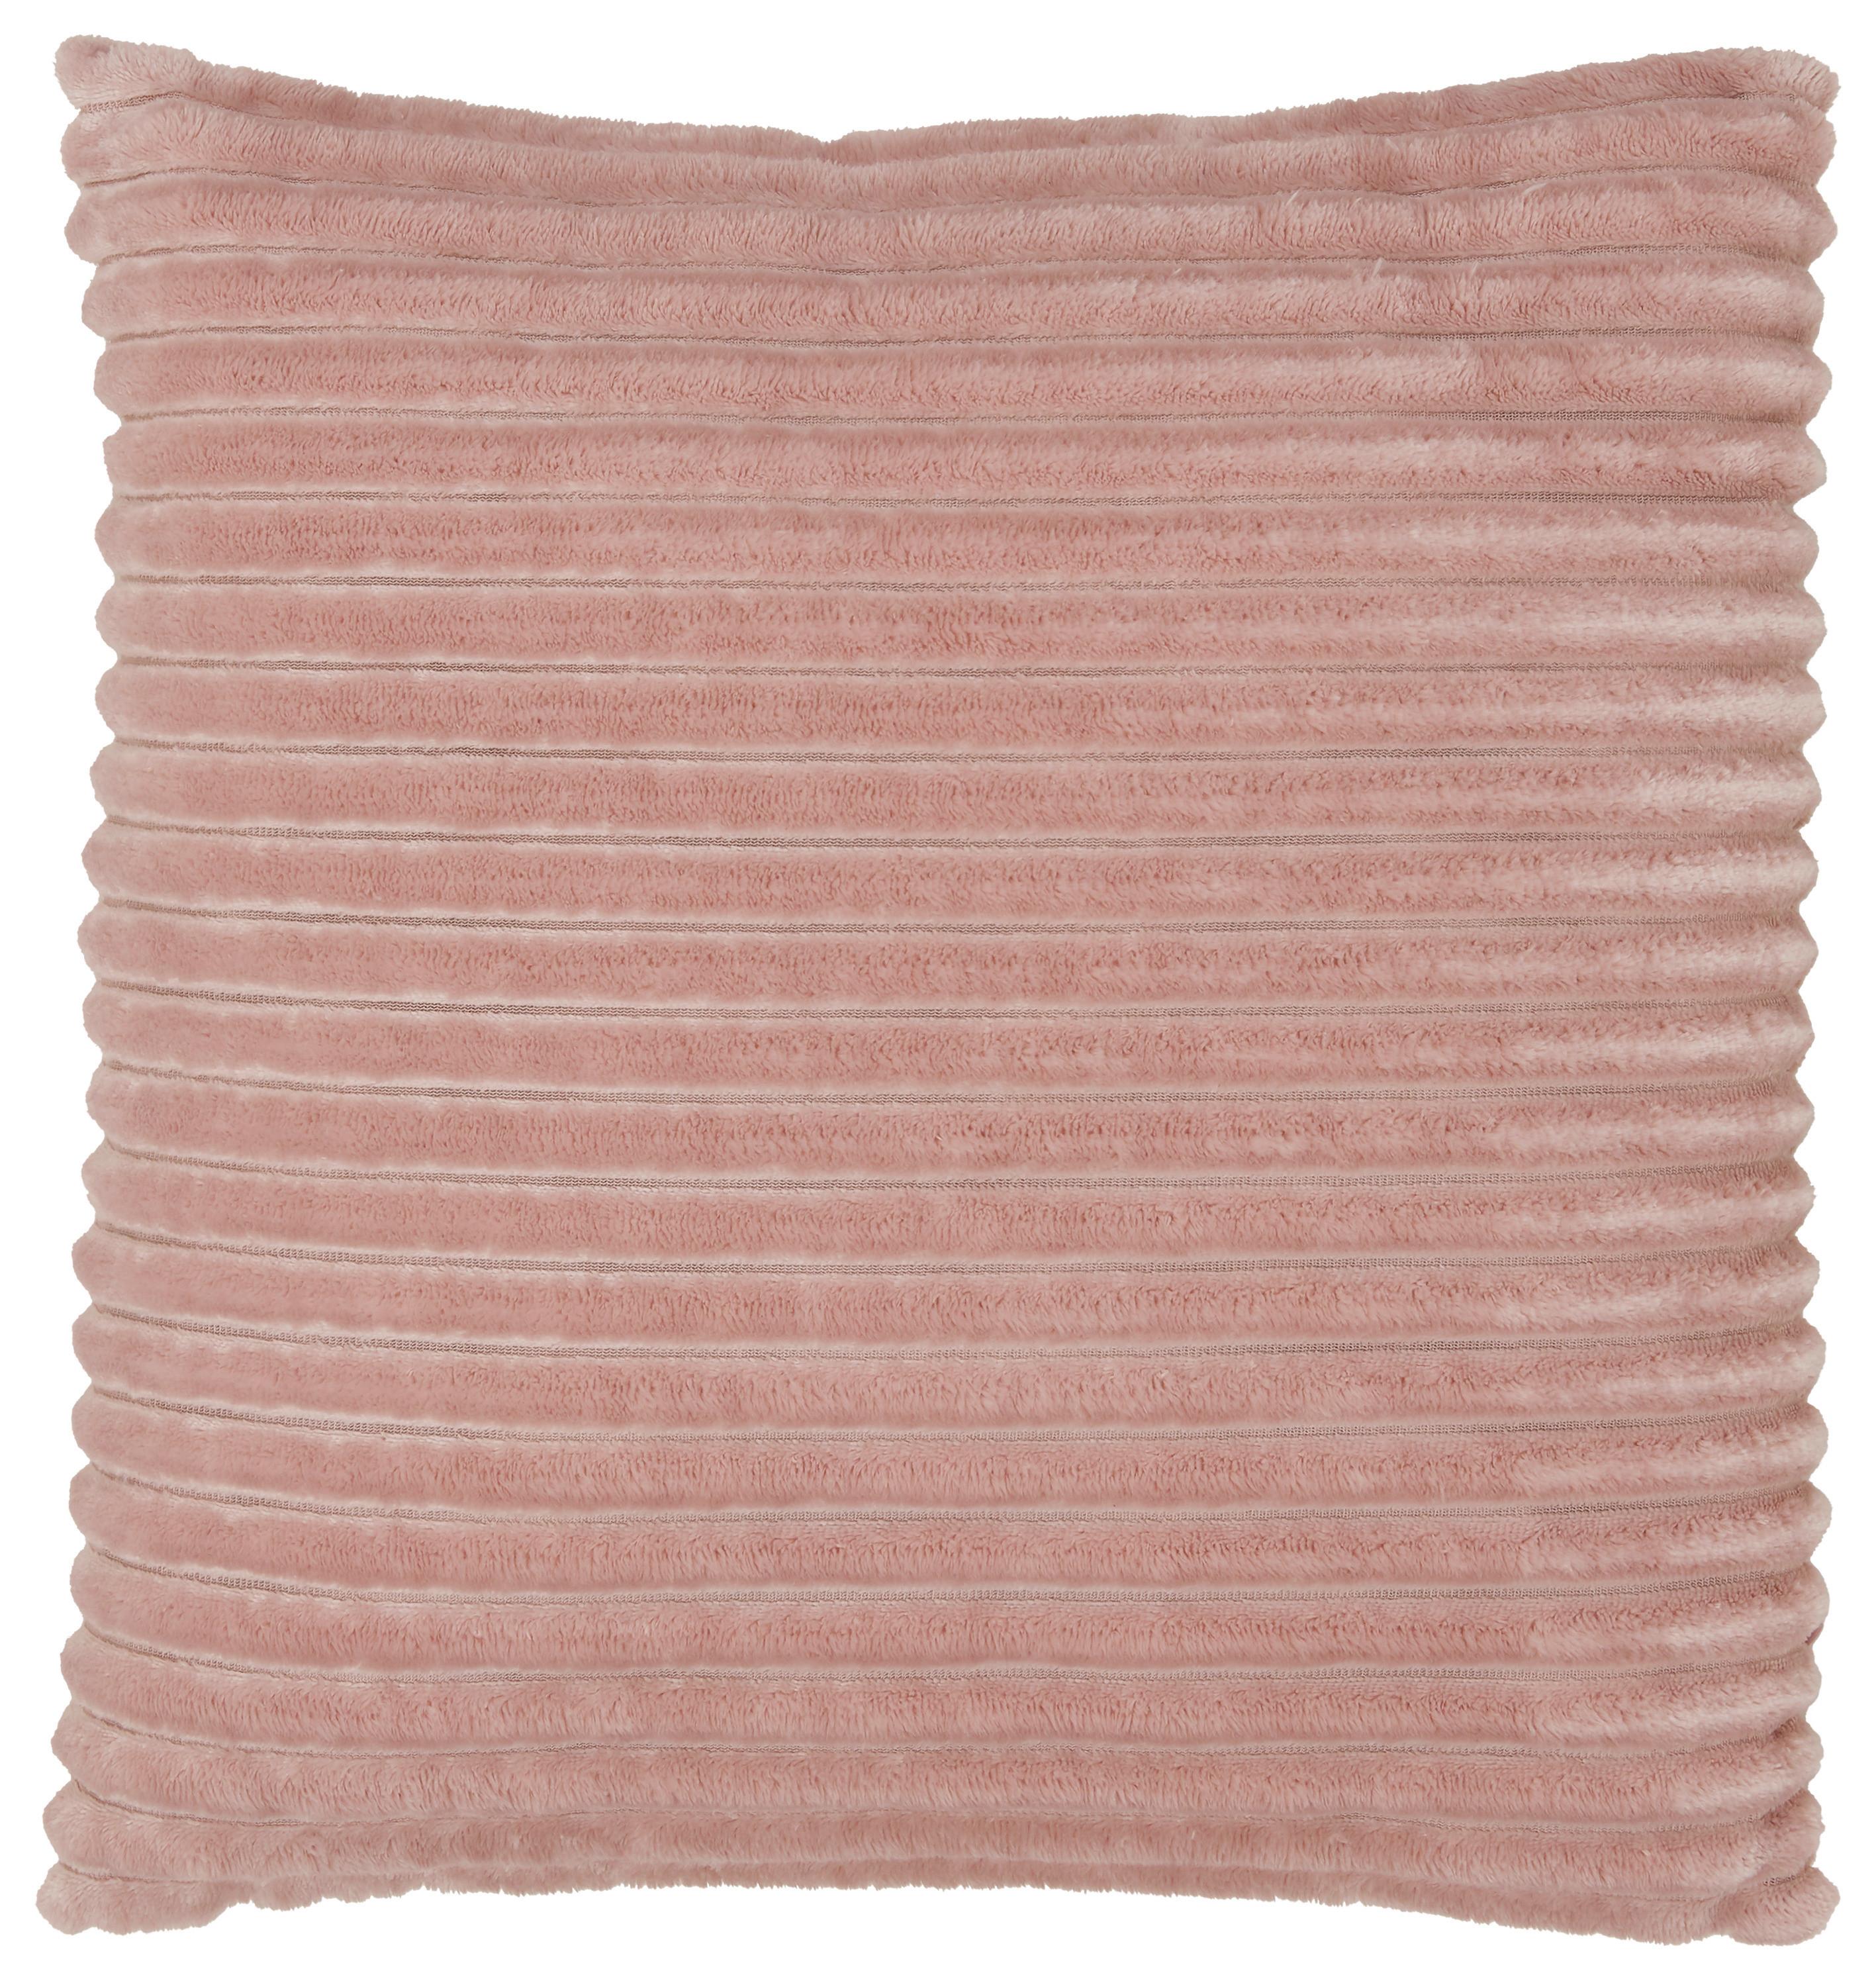 Dekorační Polštář Cordi - růžová, Konvenční, textil (45/45cm) - Modern Living